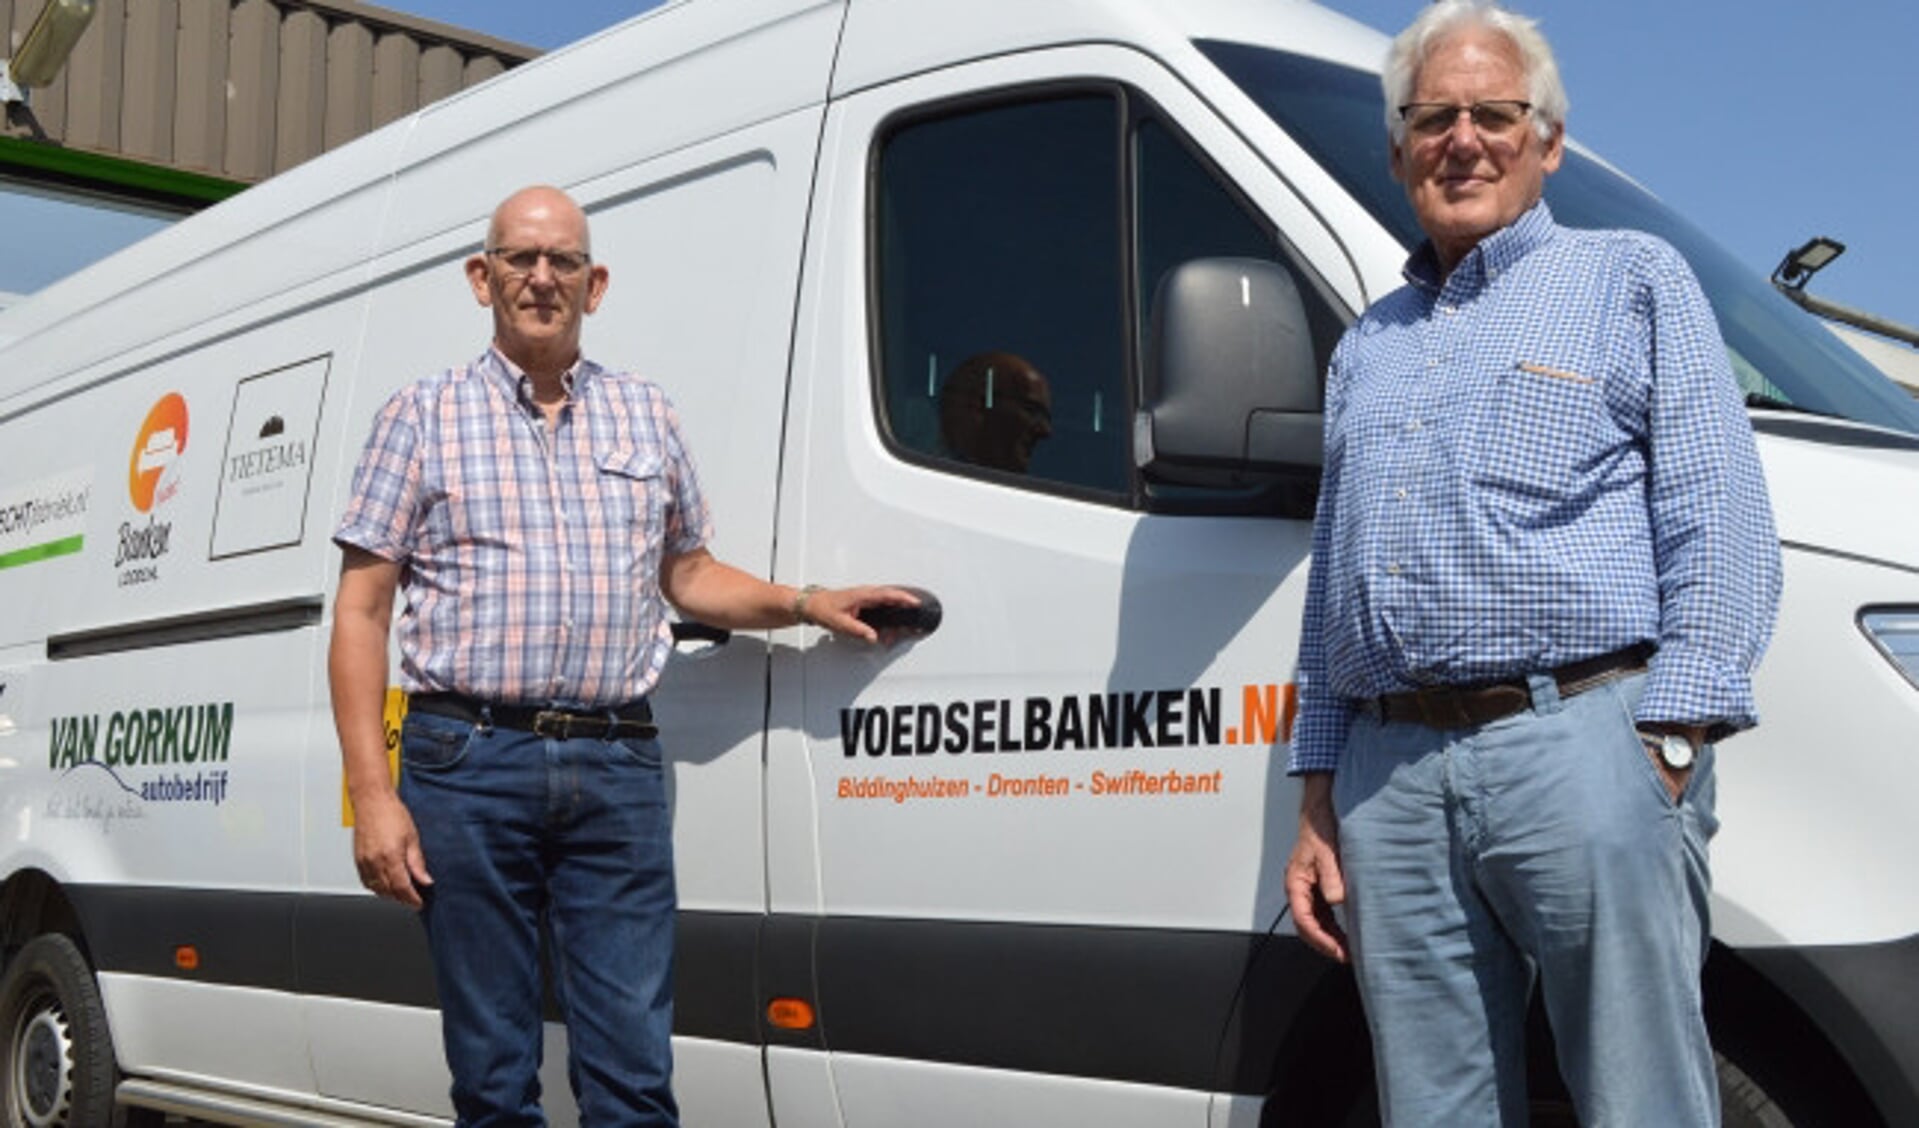  Jan Groenendijk en Frits Rutgers bij de bus van Voedselbank Dronten.